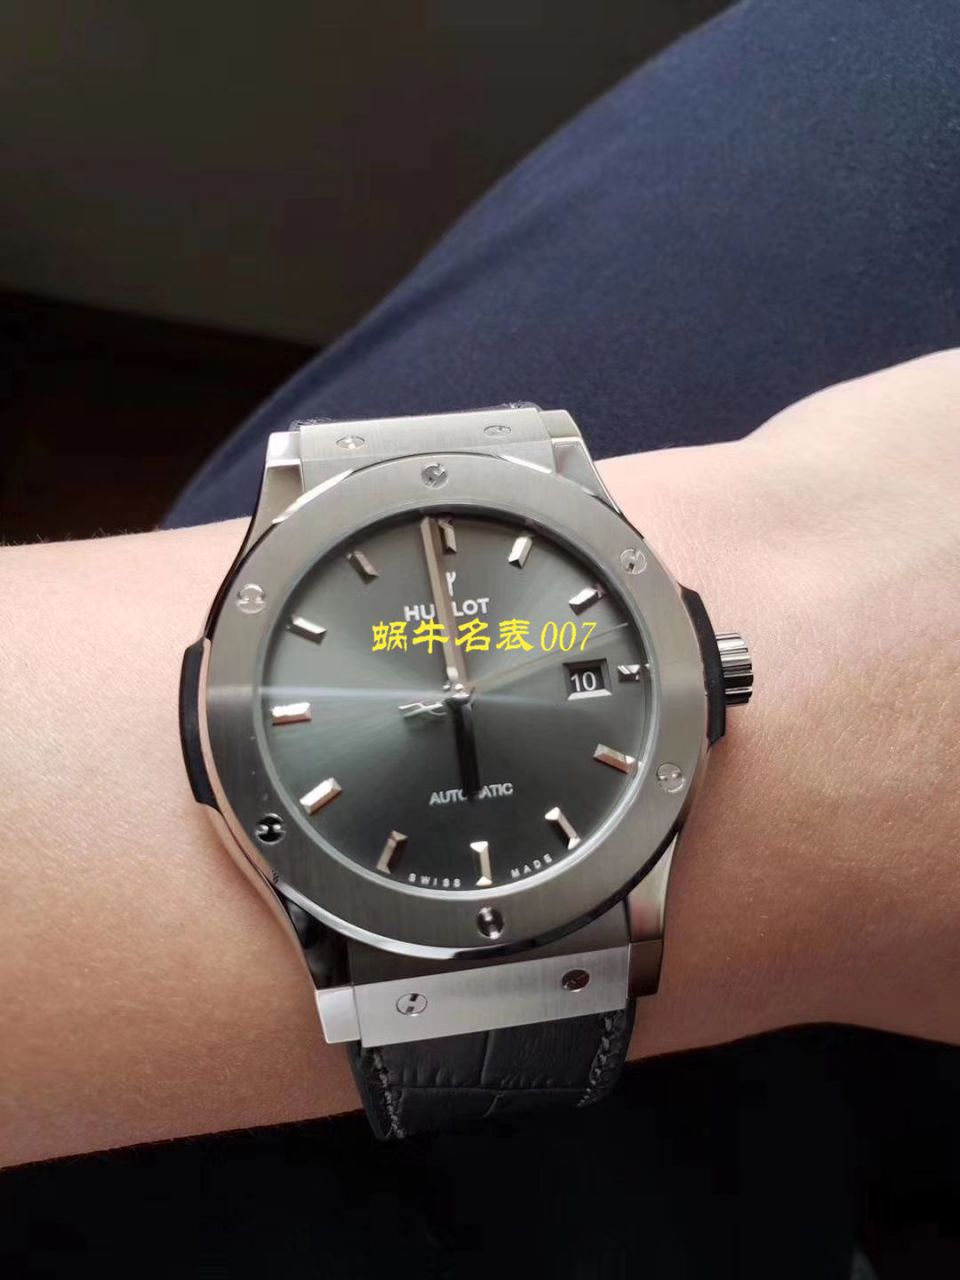 5、宇舶高仿1:1手表多少钱：哪里可以买到**1:1精仿手表，大概价格是多少